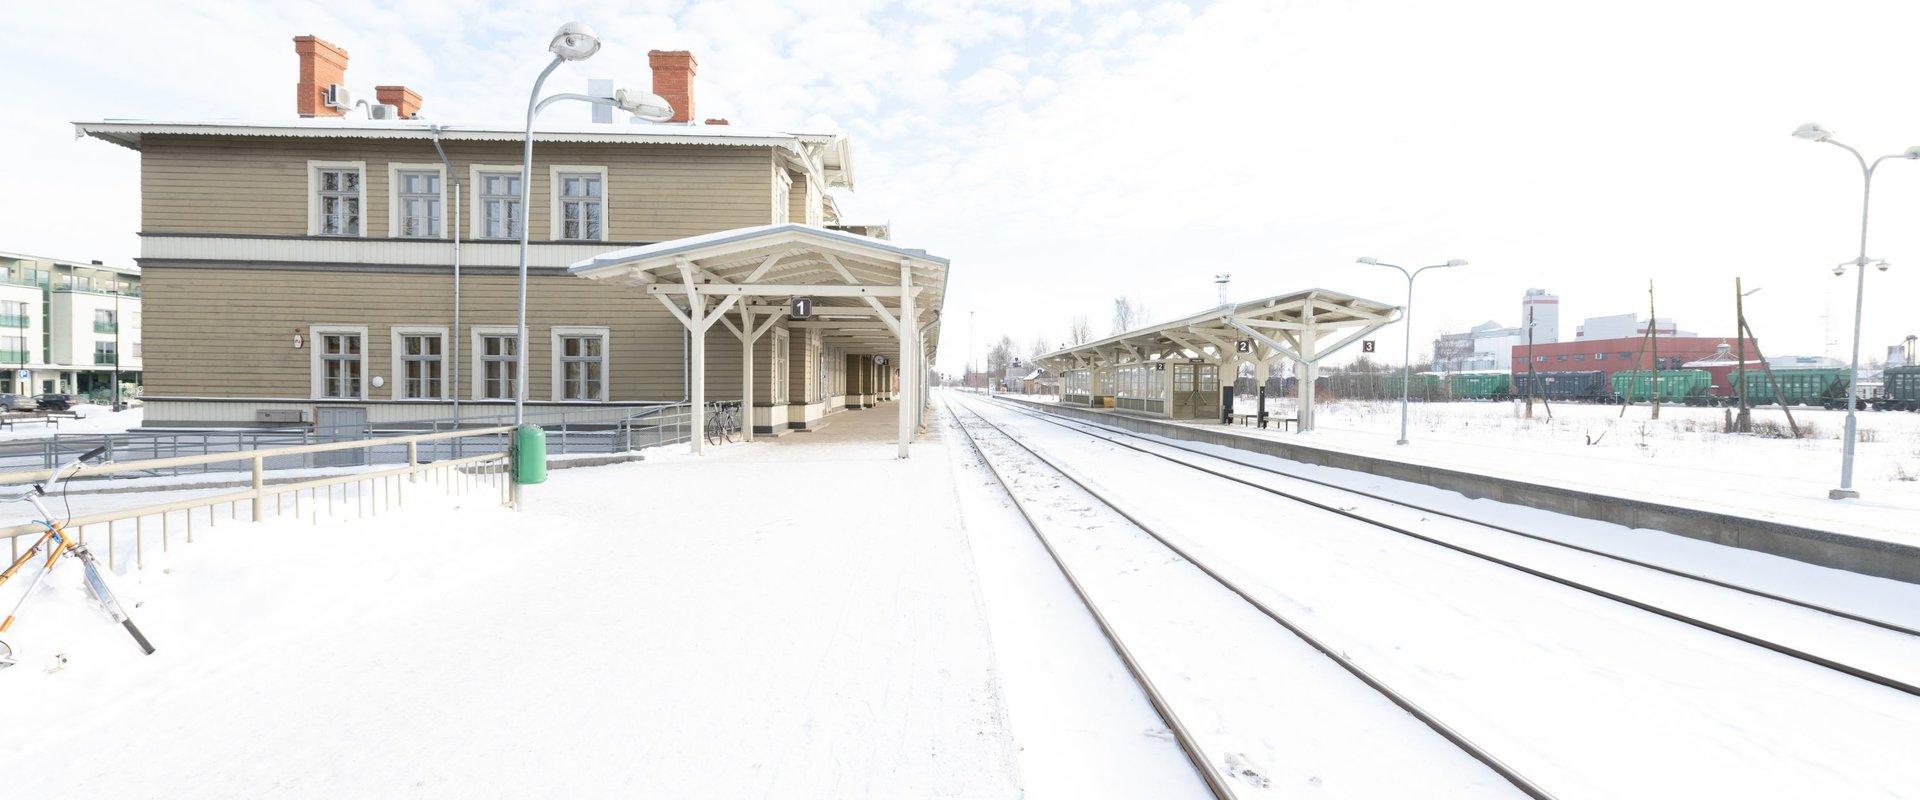 Tarton rautatieasema talvella